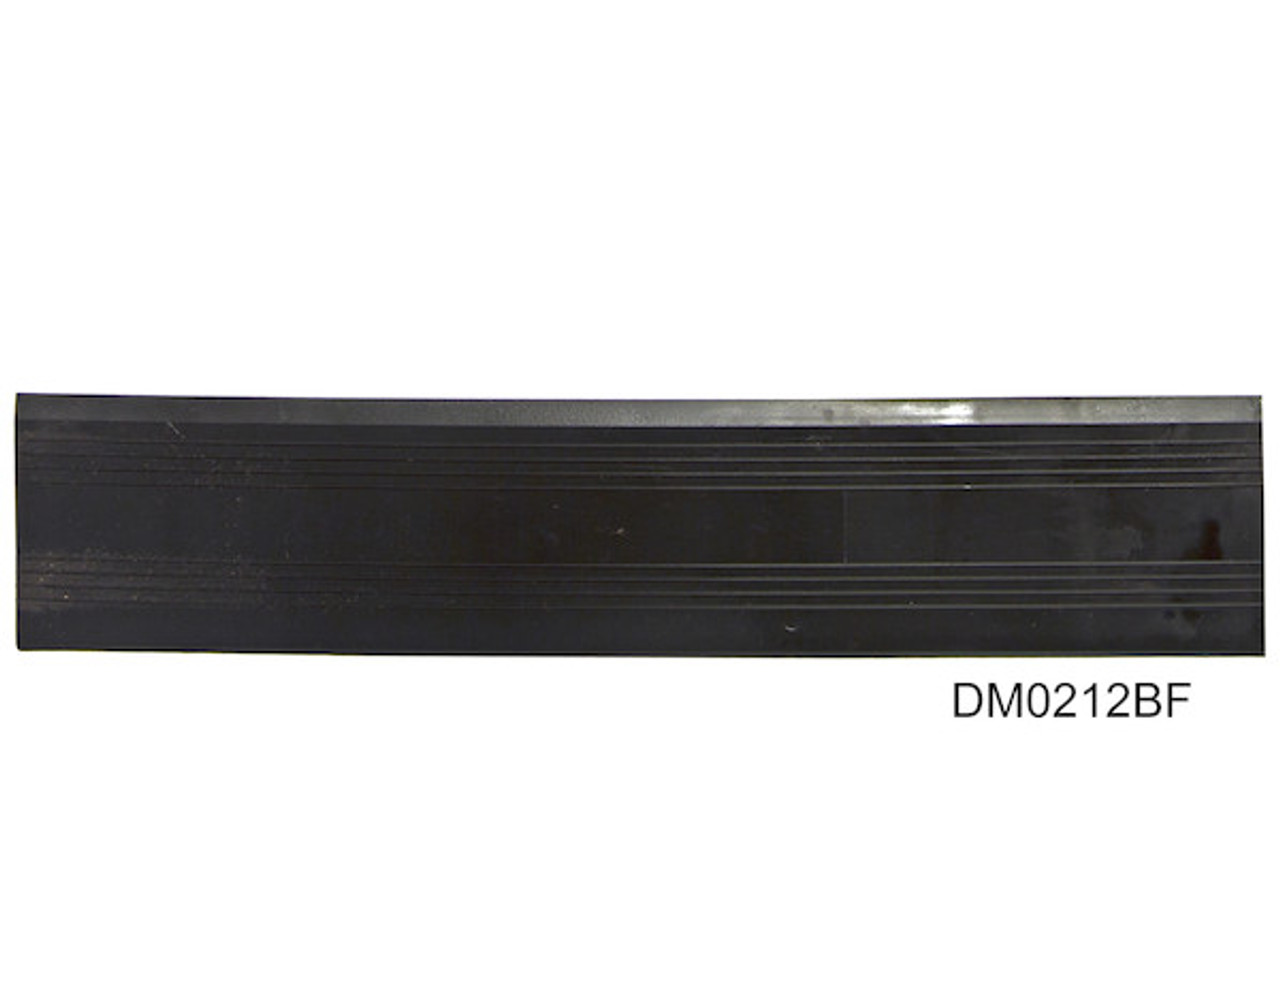 DM0214BMC - 2 x 14 Inch Male Corner For Dry-Mat Tile